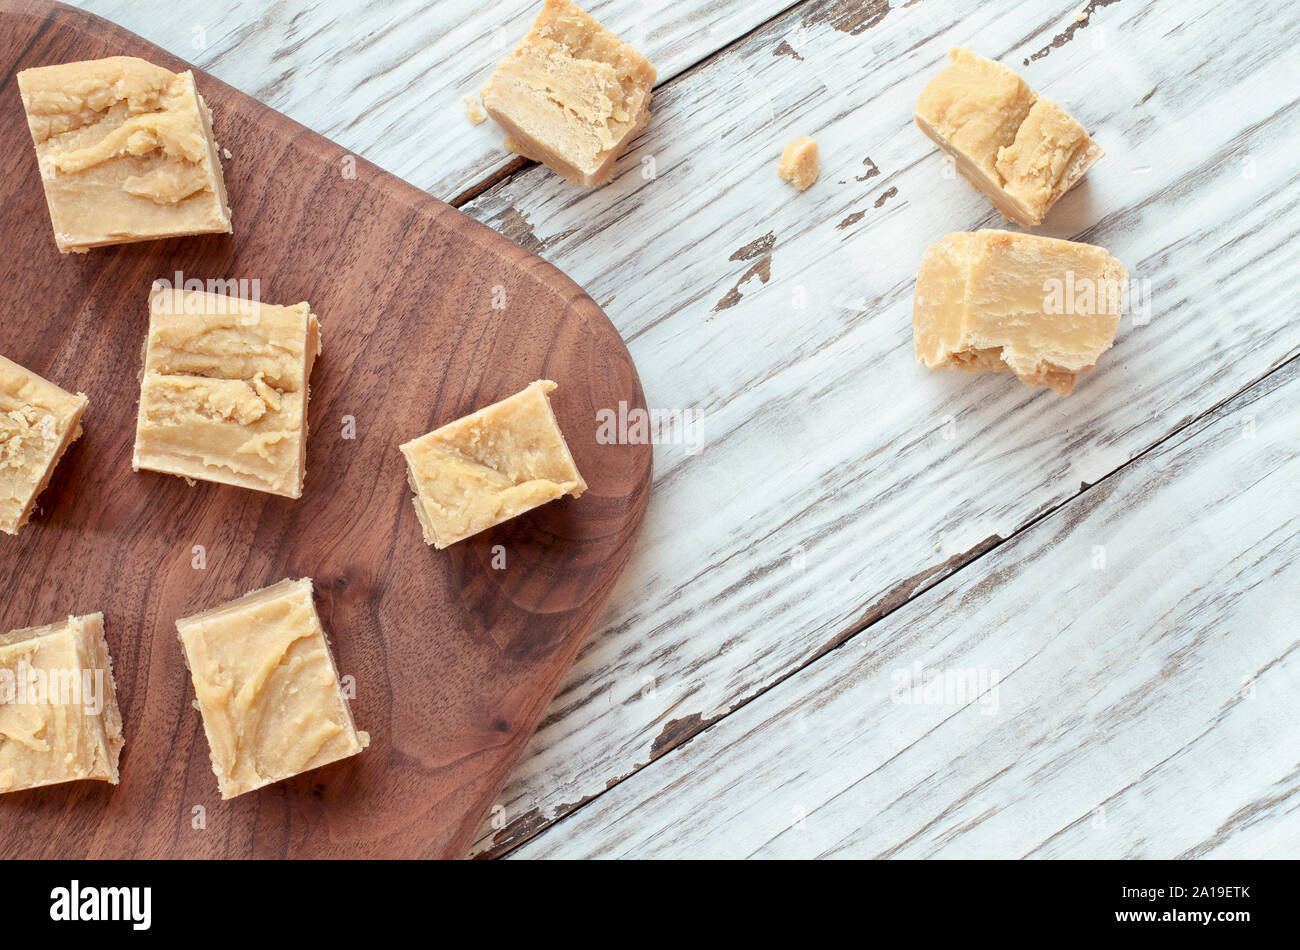 Carrés de beurre de cacahuète fait maison, délicieux fudge sur une table en bois rustique. Capture d'image en vue de dessus. Banque D'Images